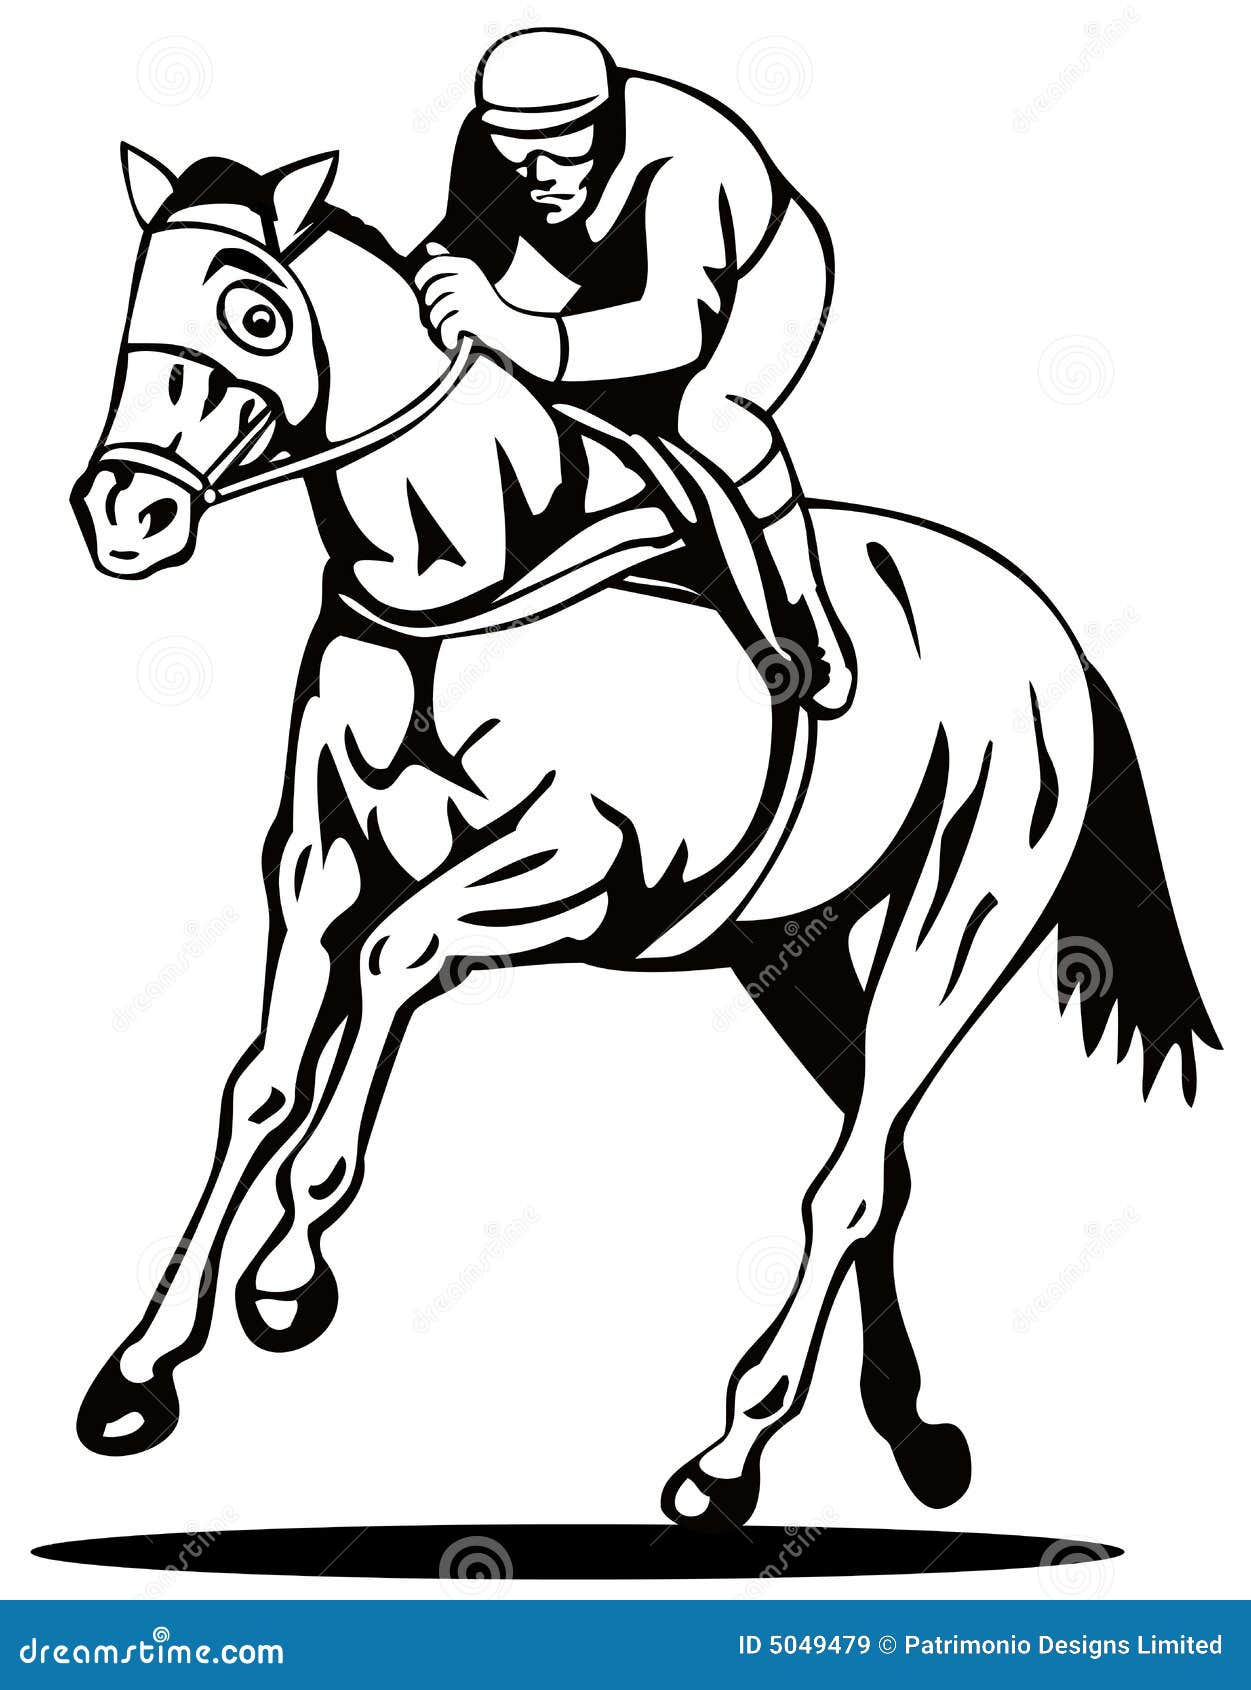 clipart horse and jockey - photo #25